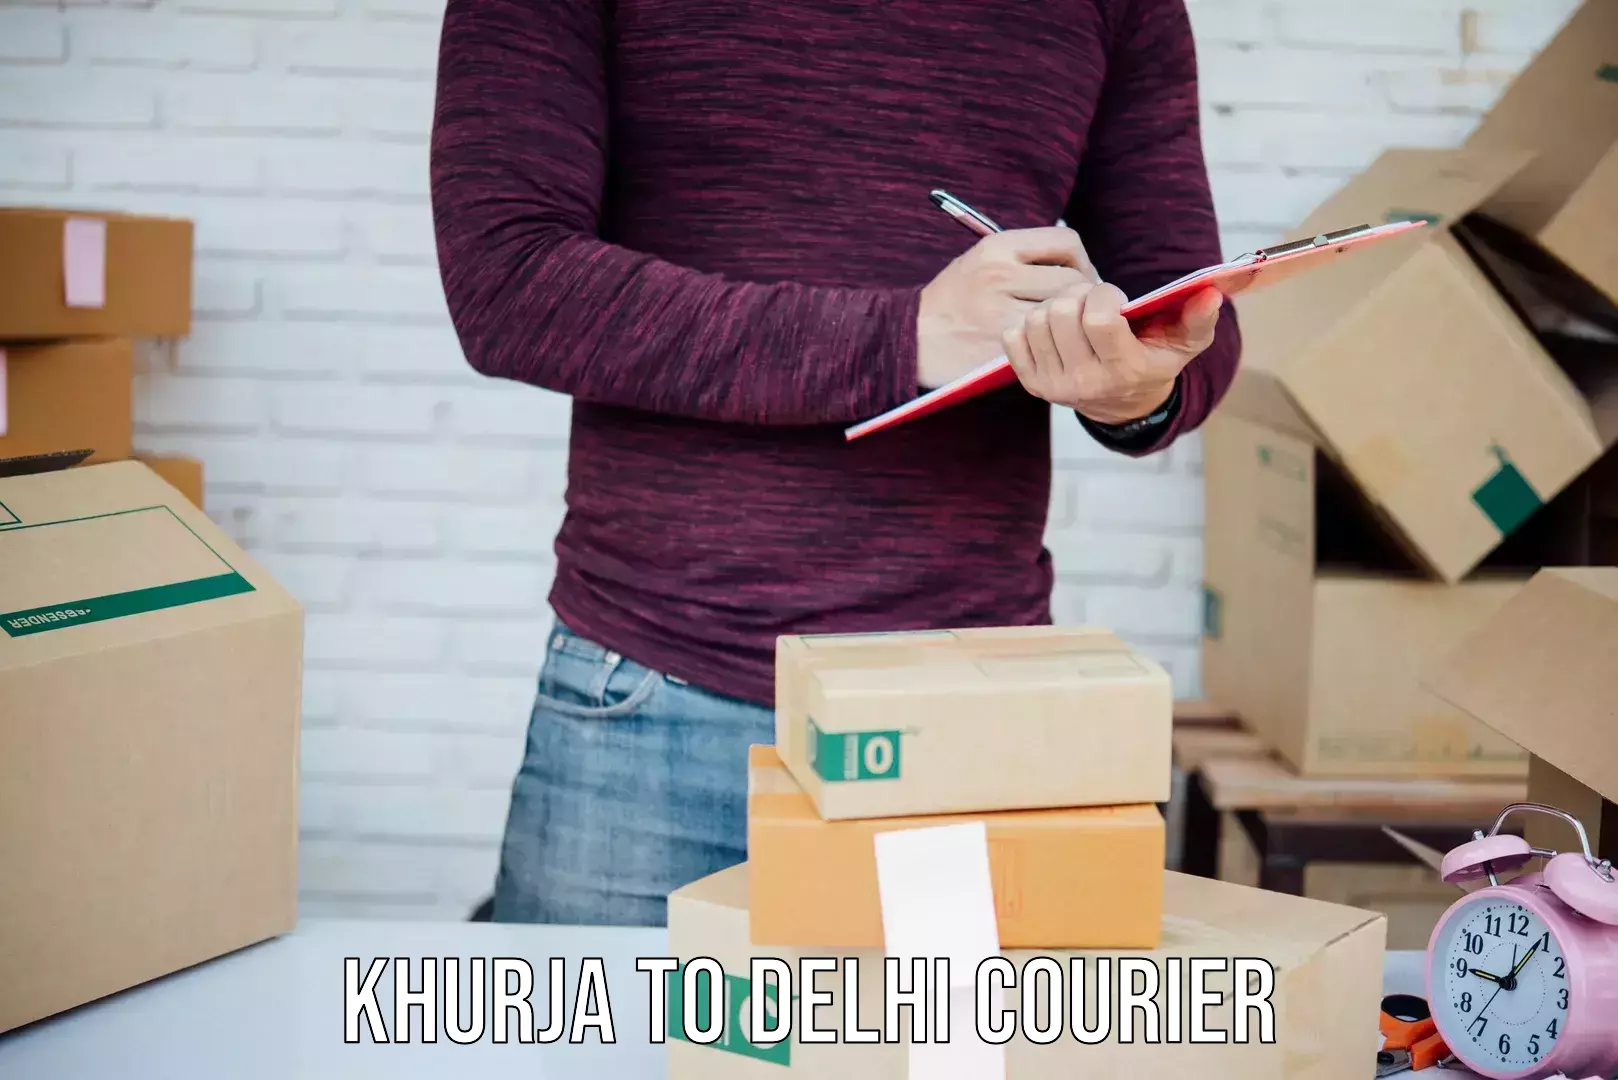 Subscription-based courier Khurja to Sansad Marg